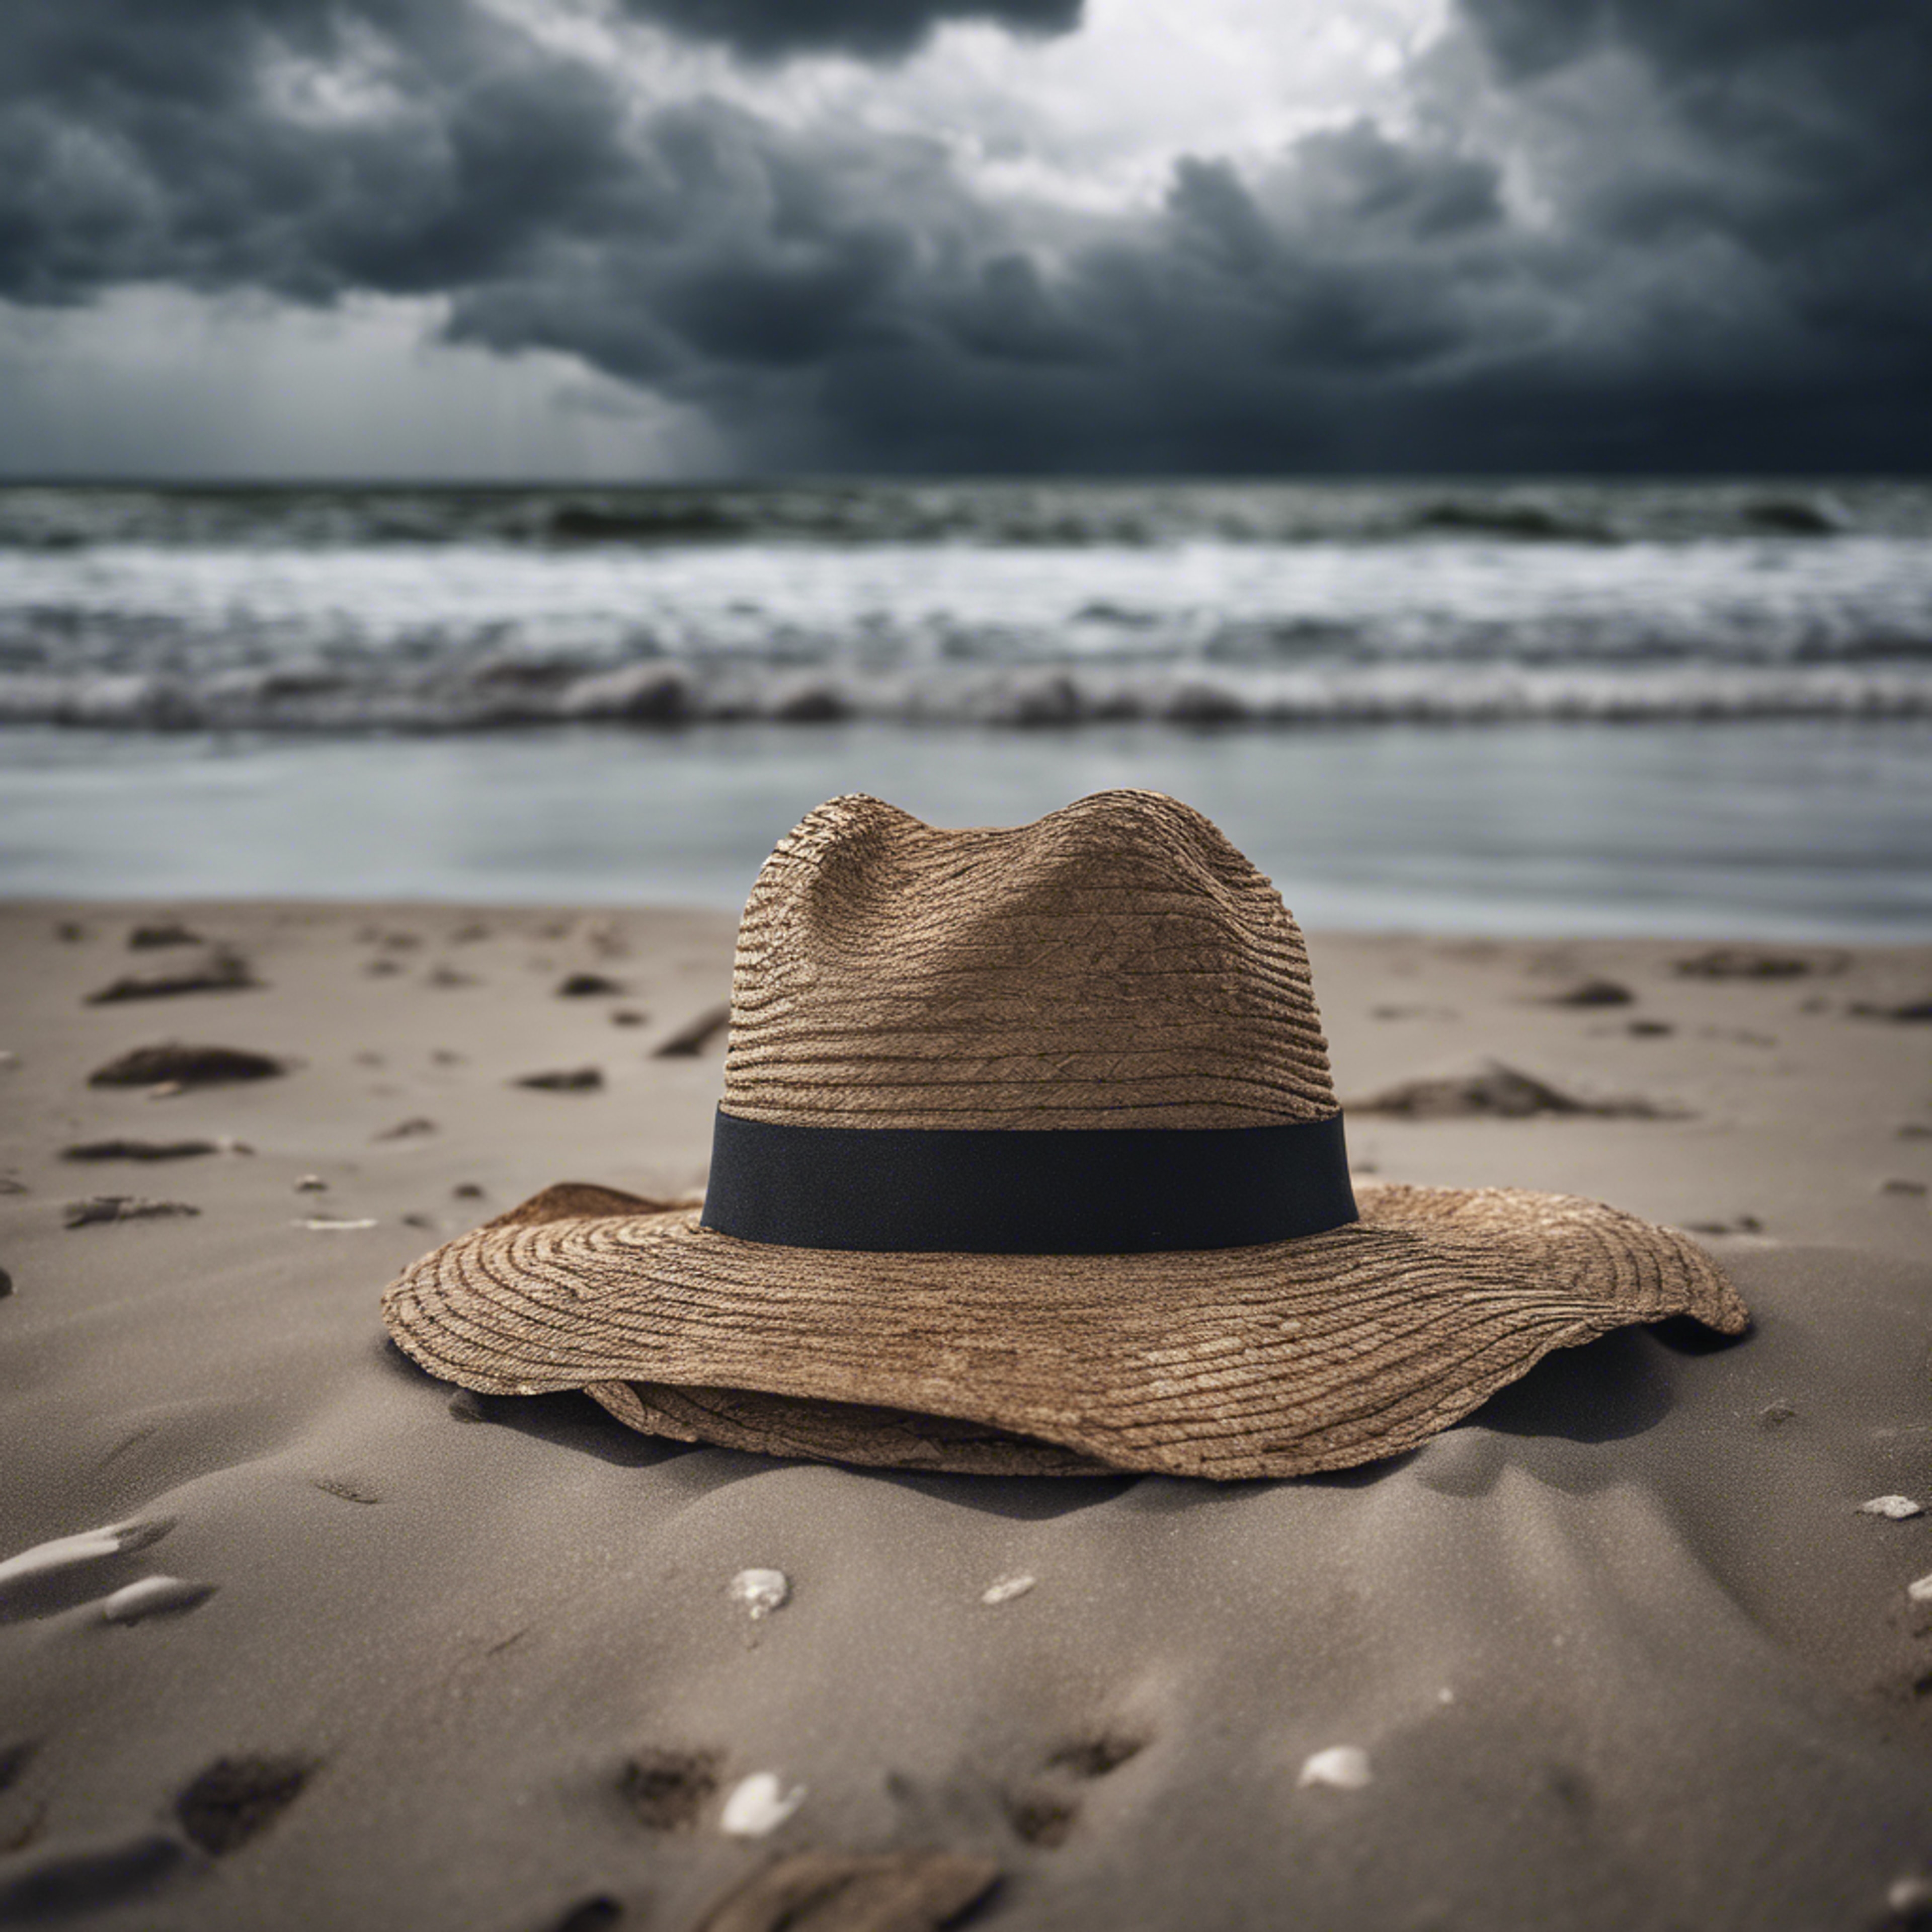 A single, forsaken hat blowing across a desolate beach under a stormy sky. Tapeta[22c522374a7d402da3d5]